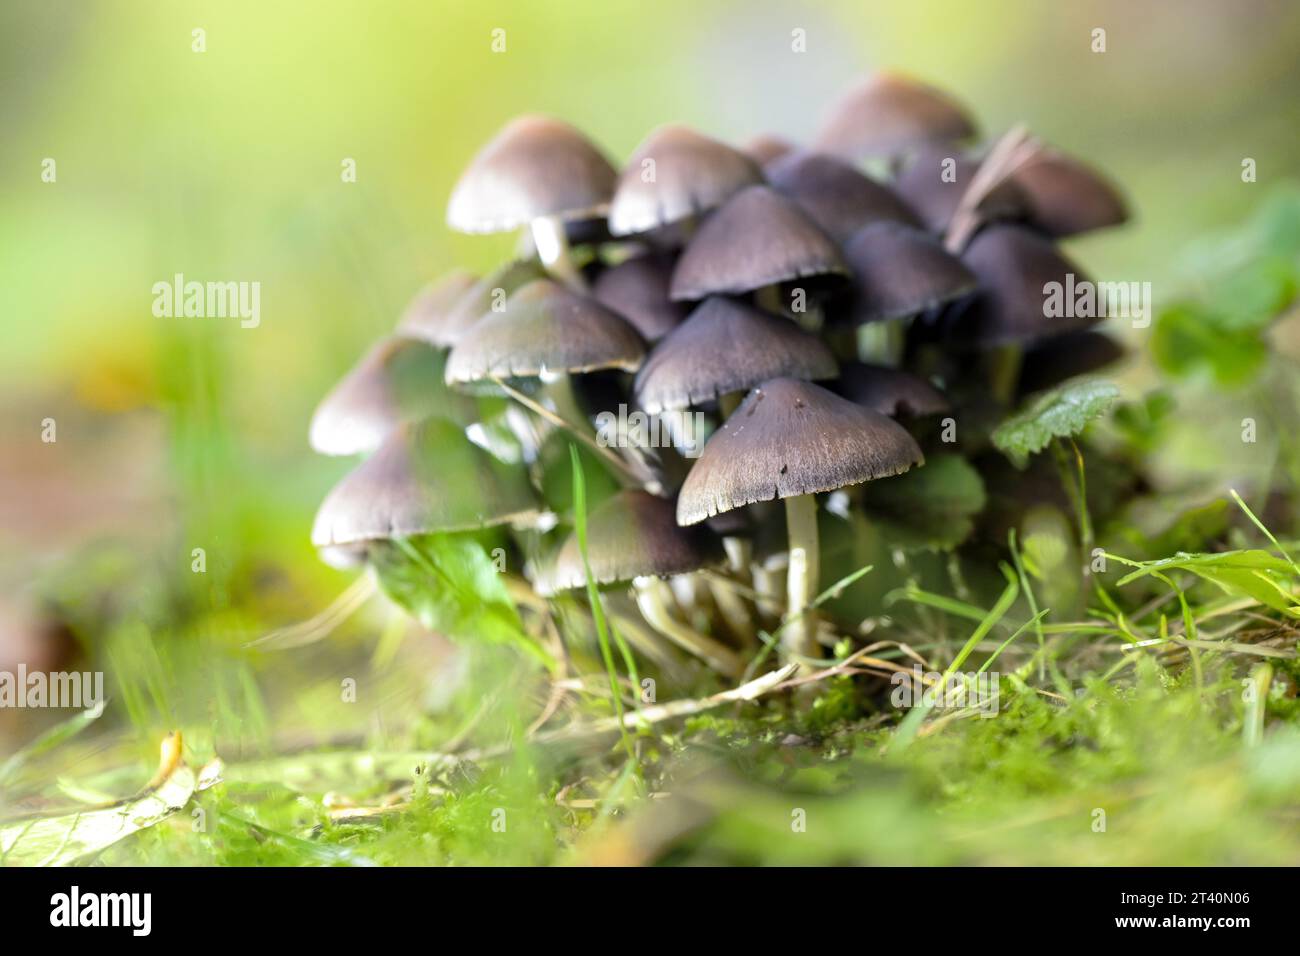 Groupe de champignons (probablement Psathyrella pygmaea), champignons à calottes brunes et fines tiges creuses blanches dans la mousse verte dans une forêt de feuillus, espace copie, Banque D'Images